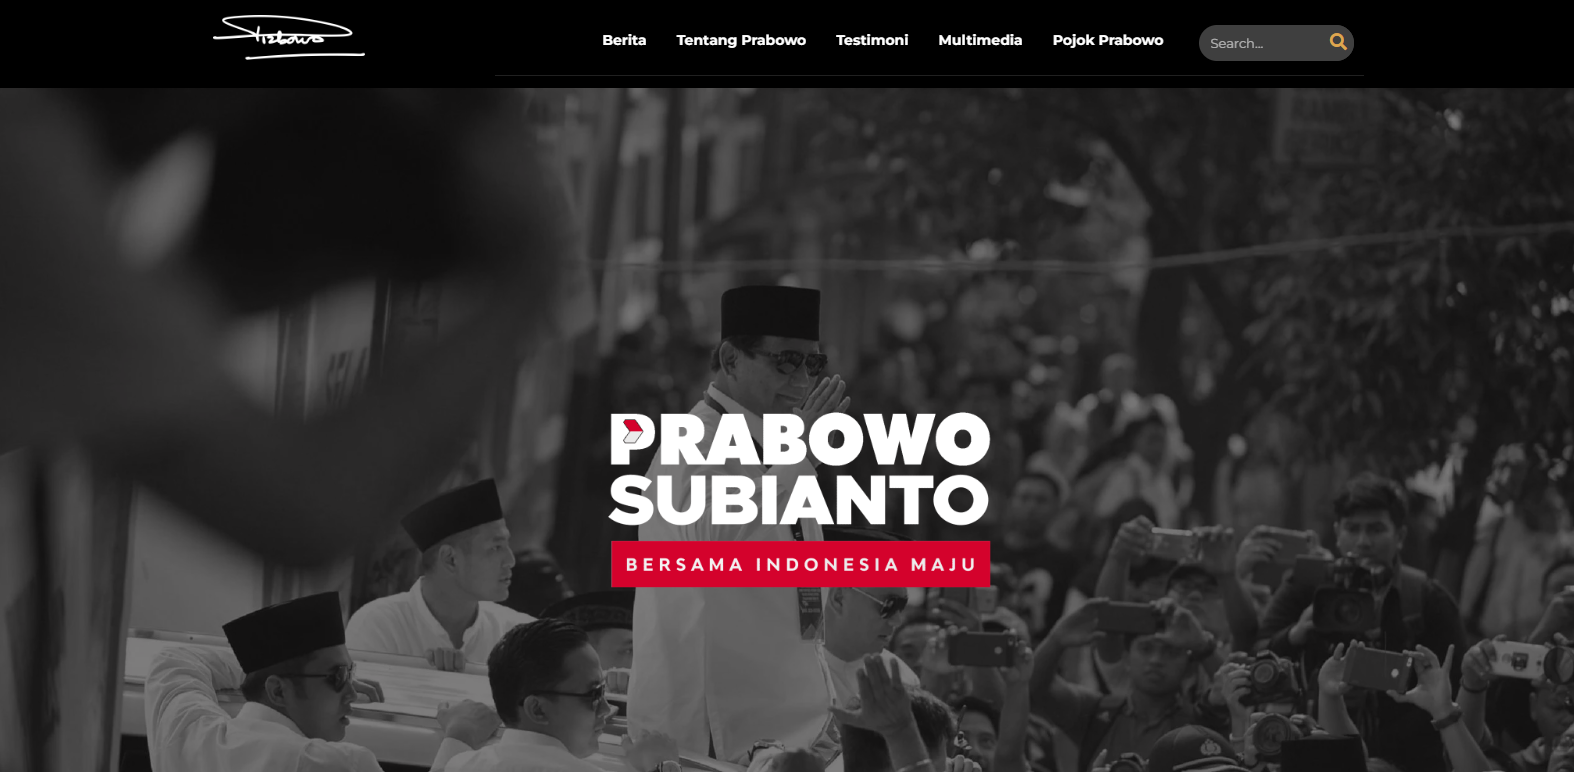 Website Prabowo Subianto